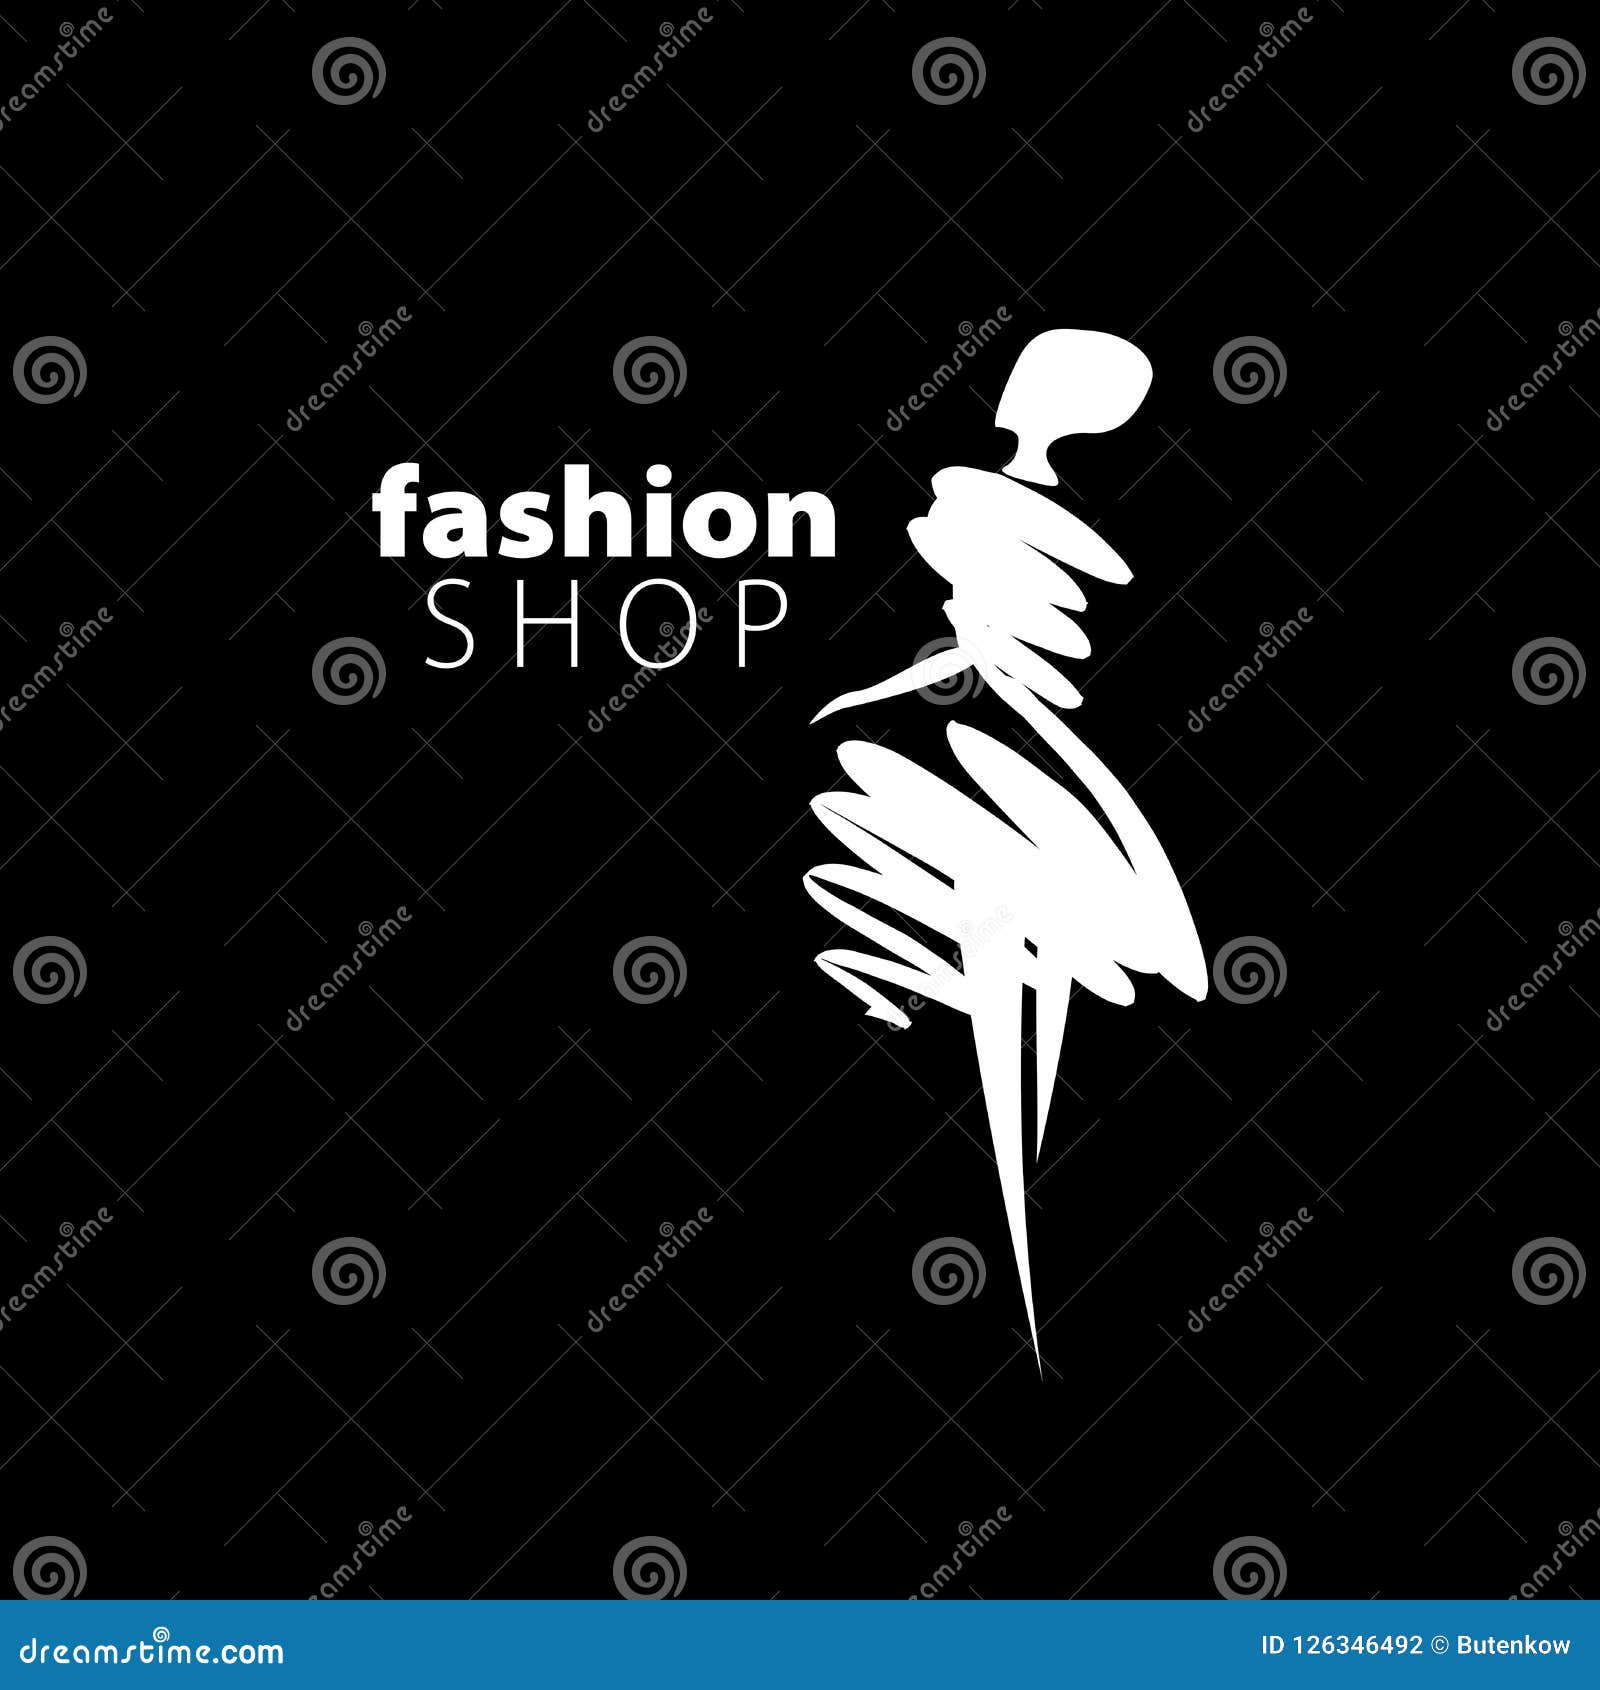 Vector logo girls stock vector. Illustration of female - 126346492